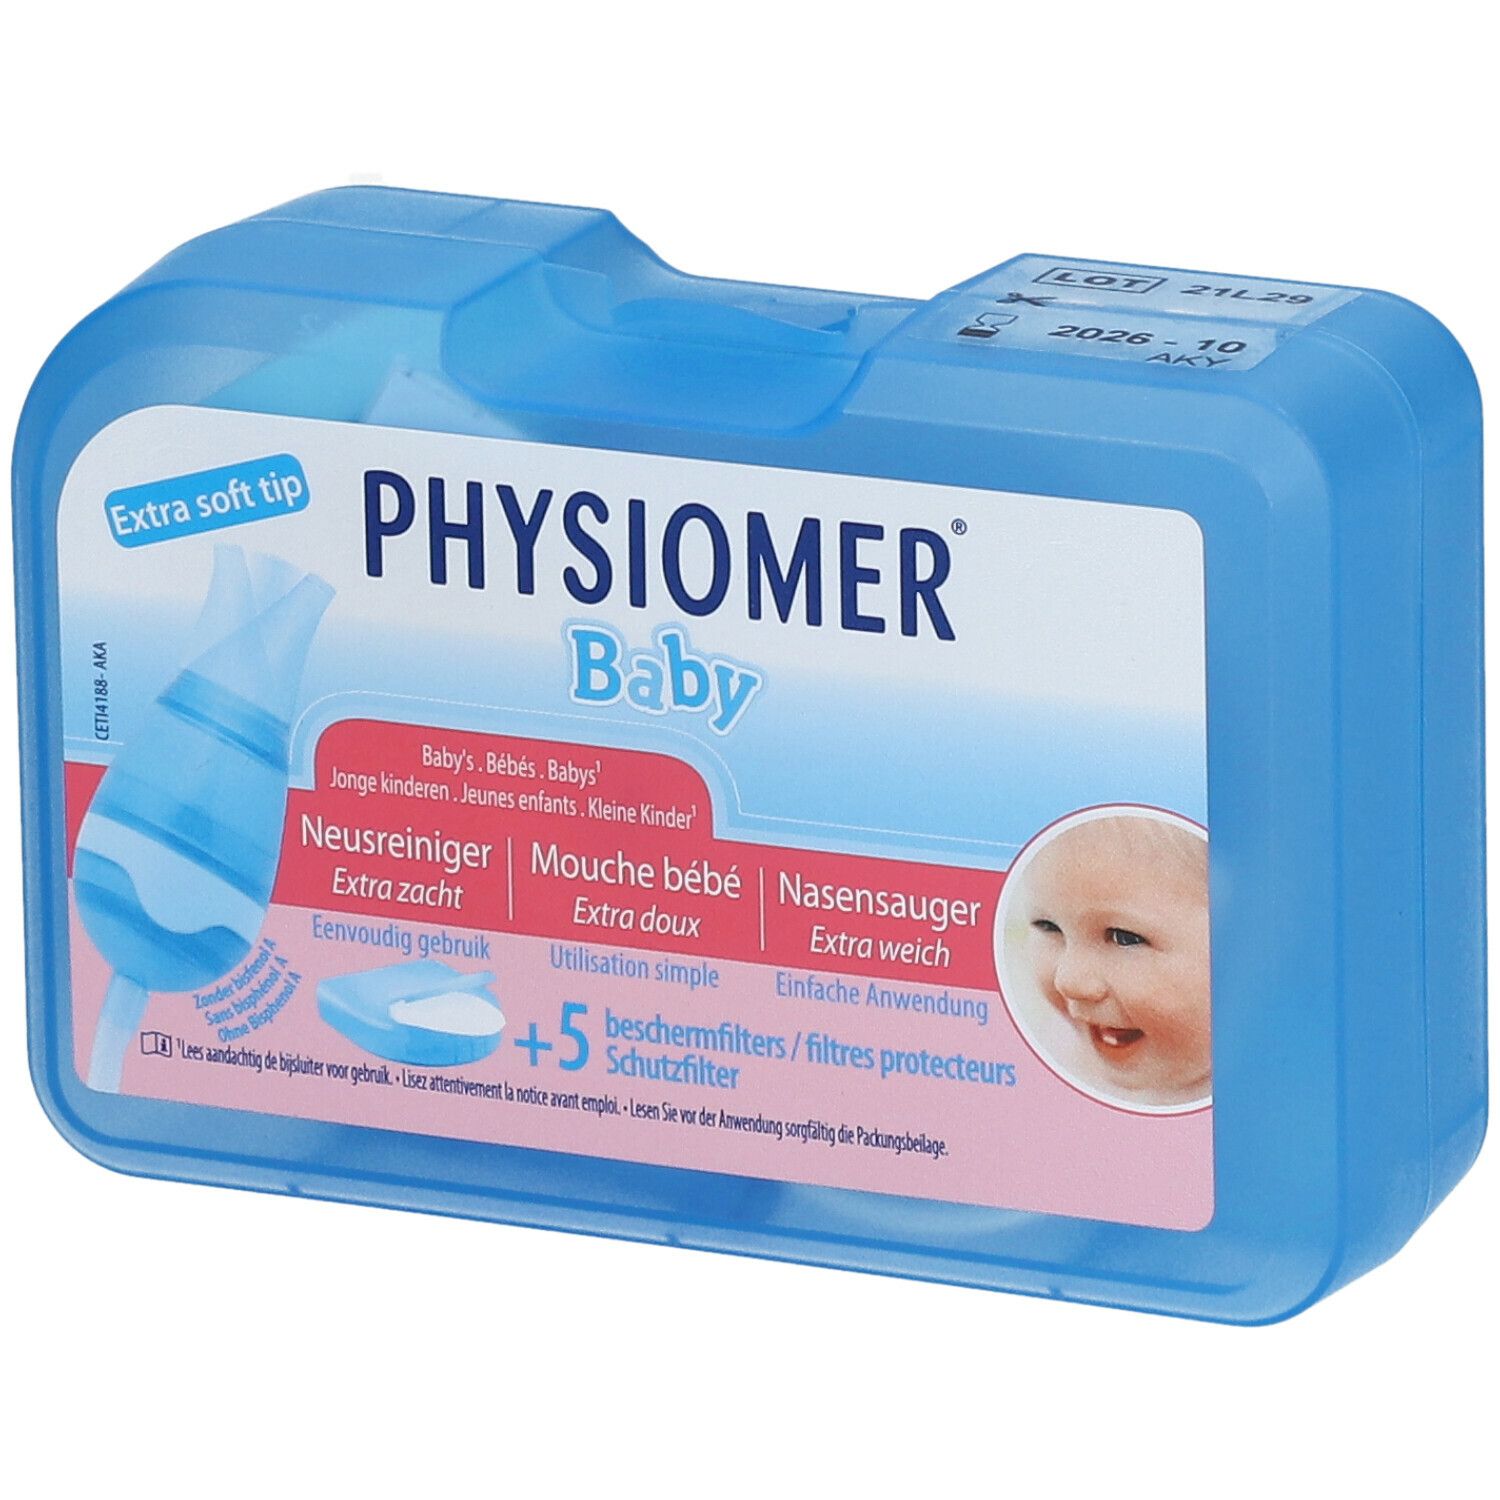 Physiomer® Mouche Bébé + 5 Filtres protecteurs 1 pc(s) - Redcare Apotheke